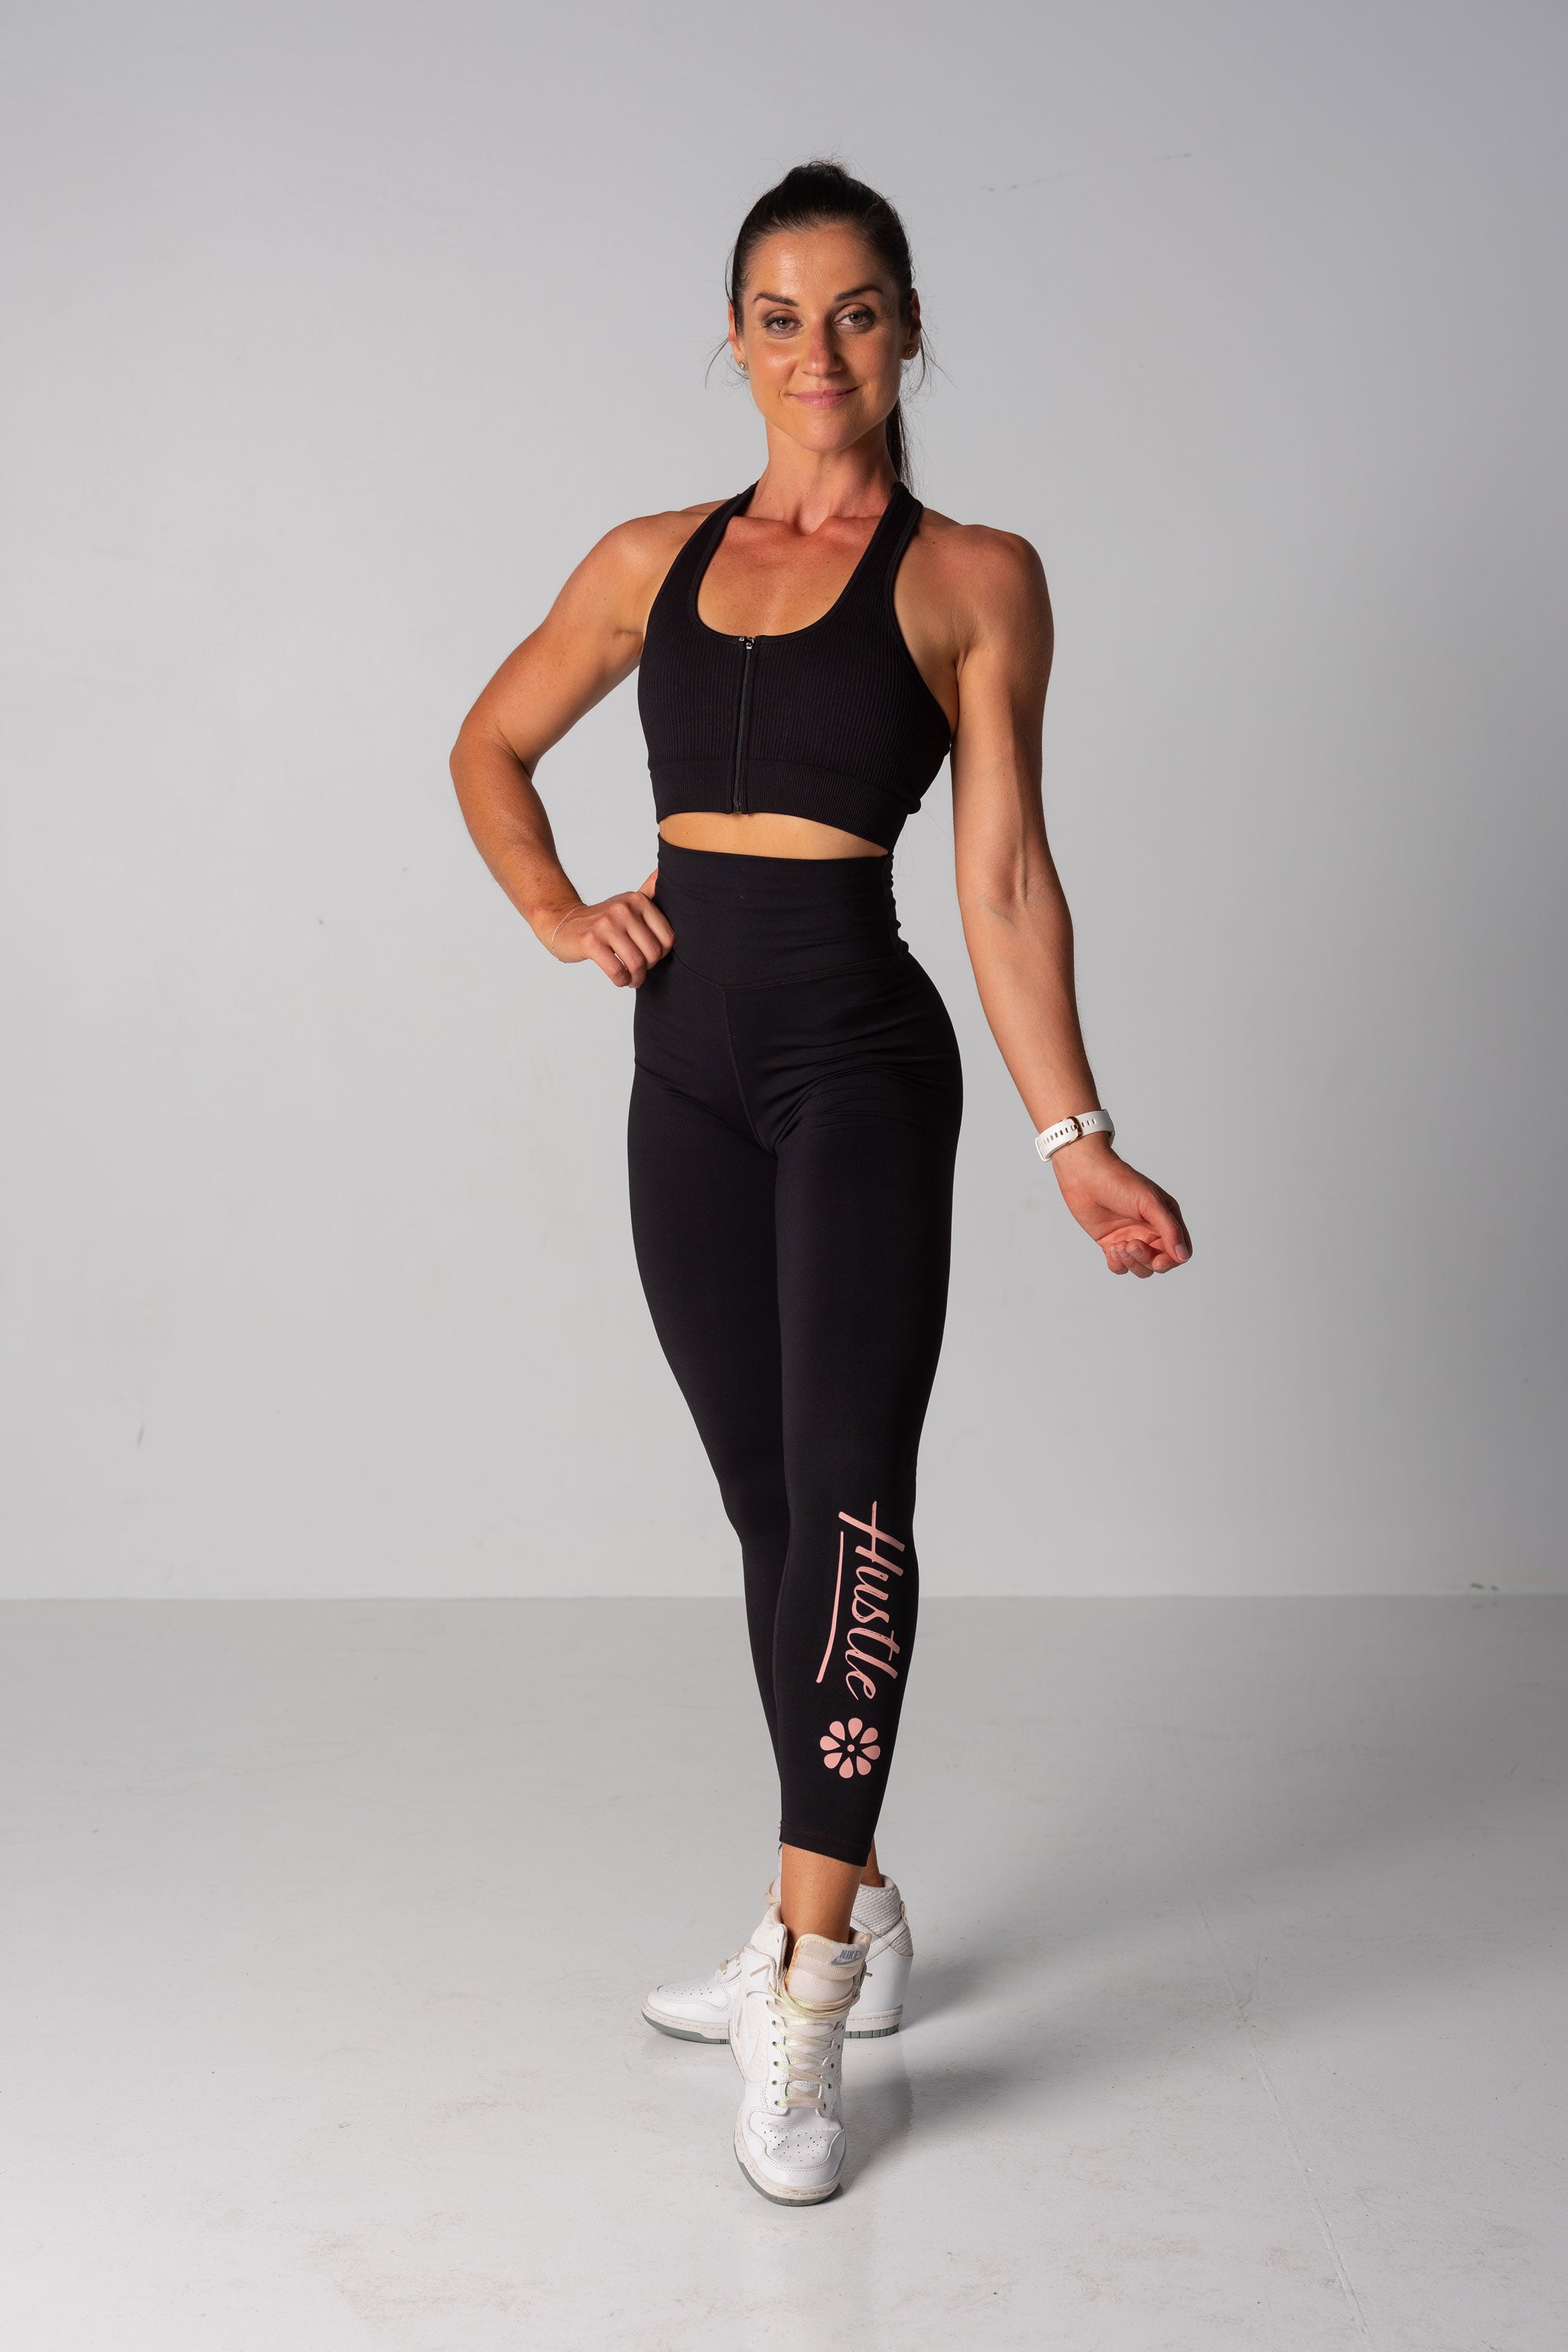 Power Workout Leggings - Black, Women's Leggings